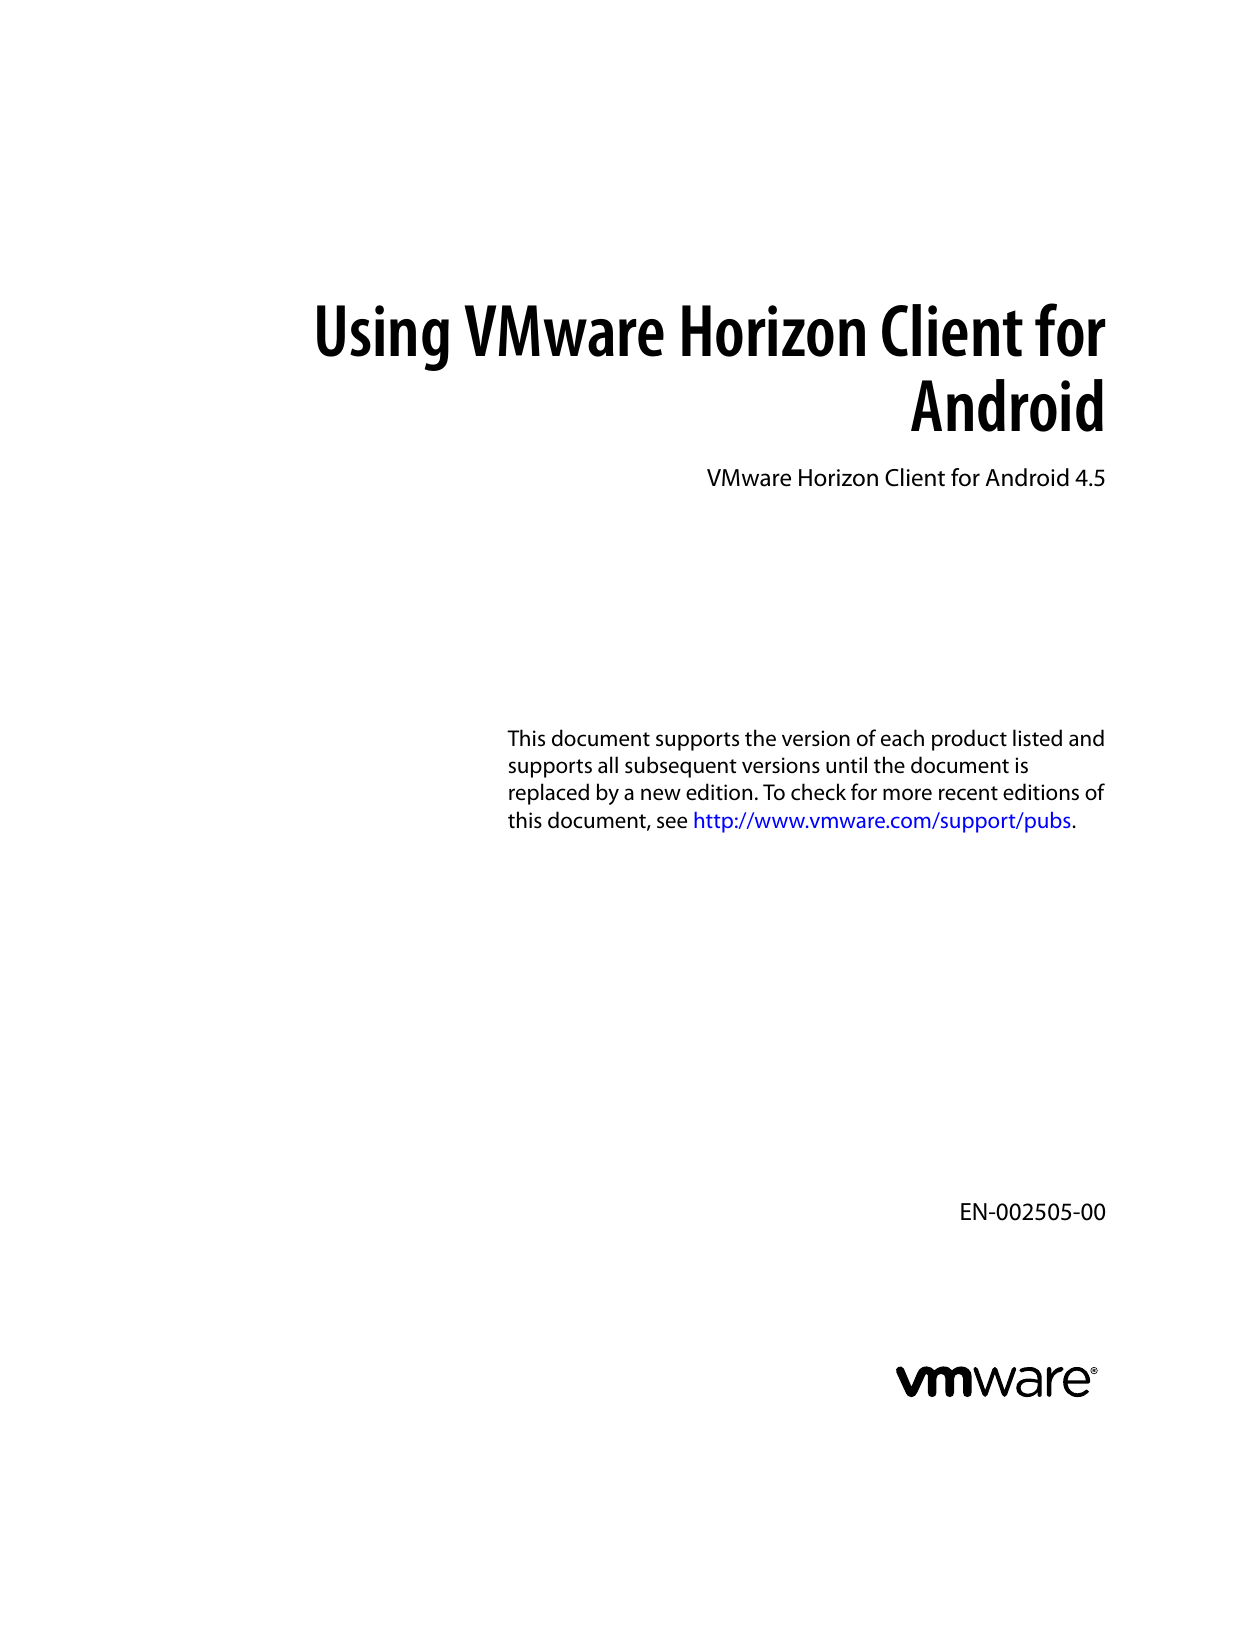 vmware horizon client 4